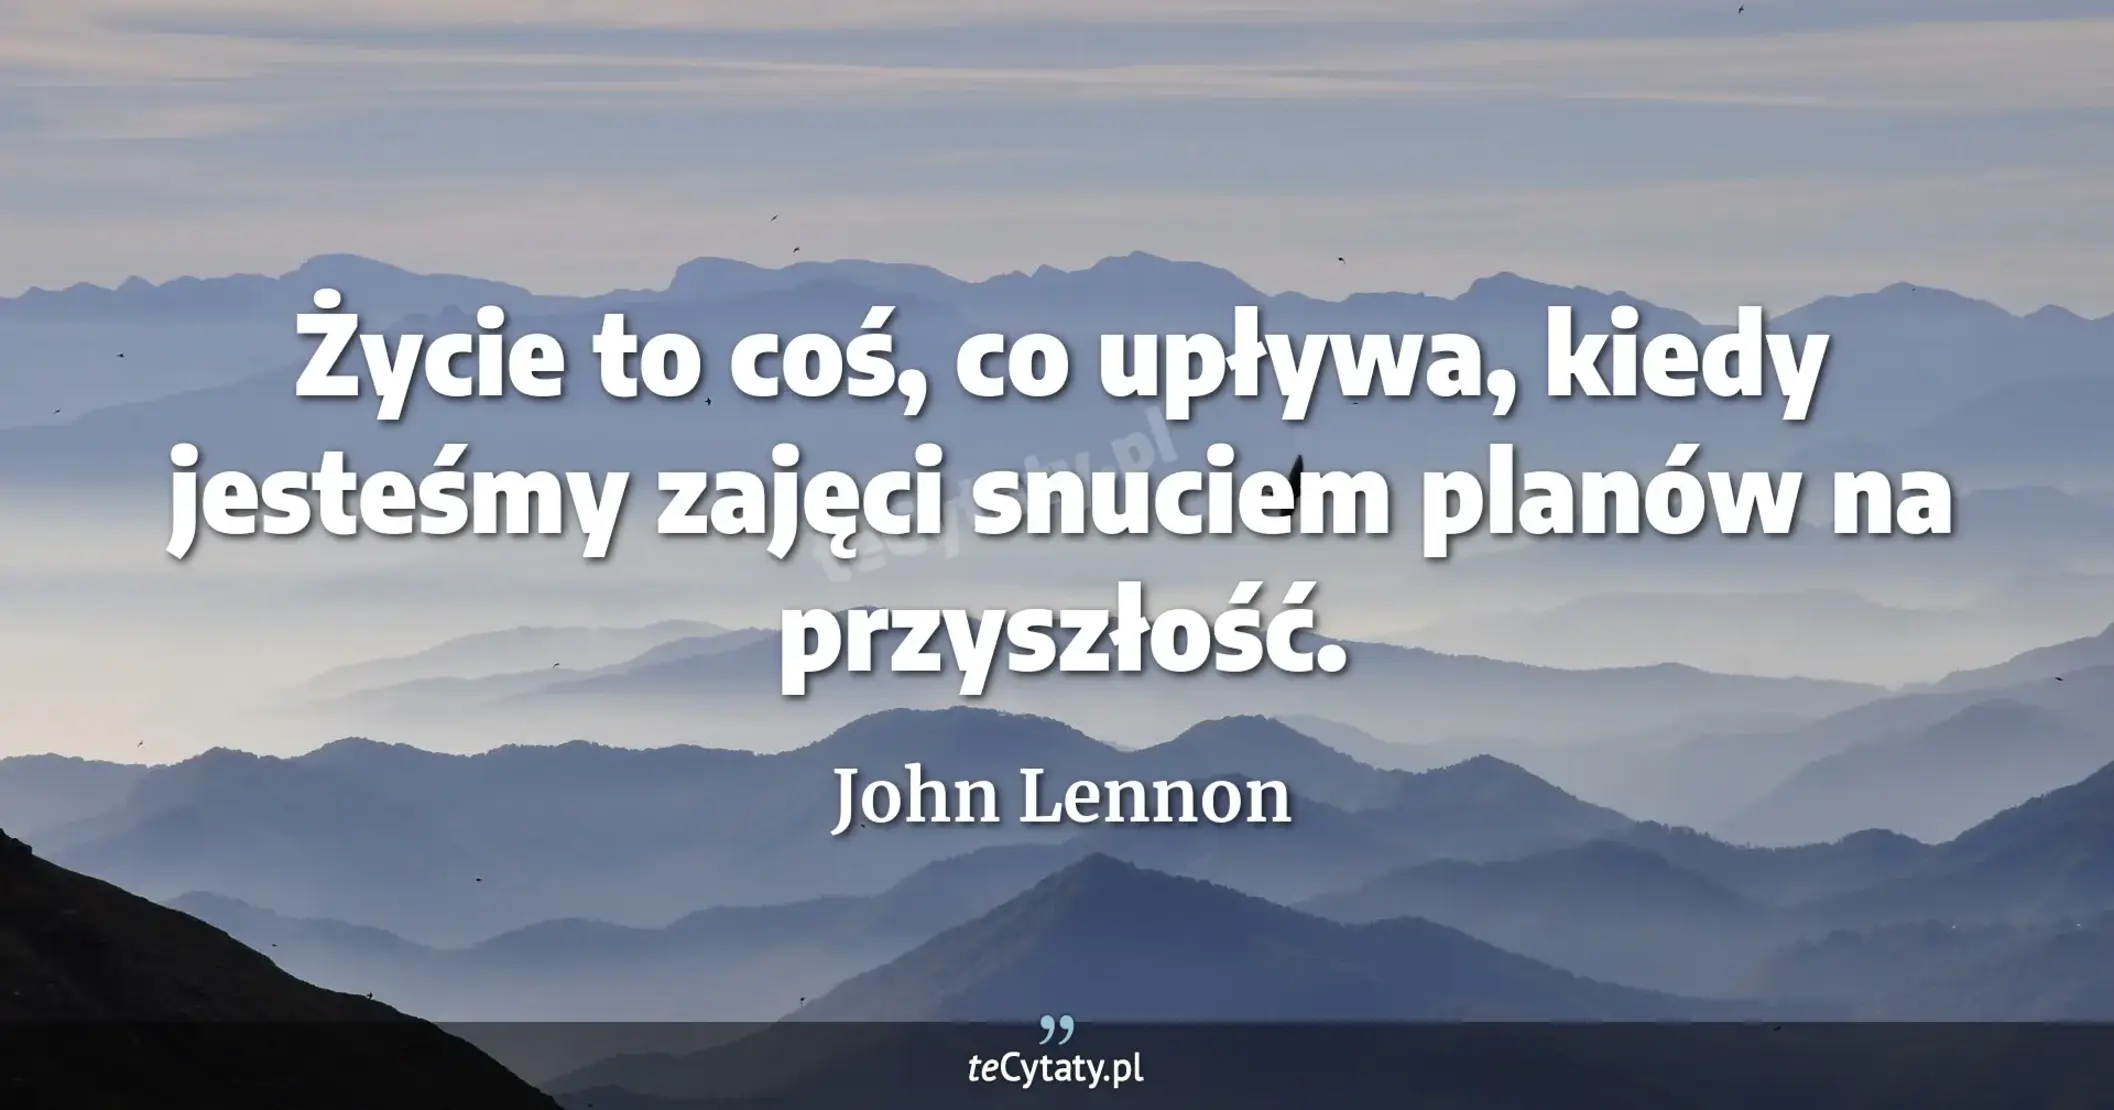 Życie to coś, co upływa, kiedy jesteśmy zajęci snuciem planów na przyszłość. - John Lennon